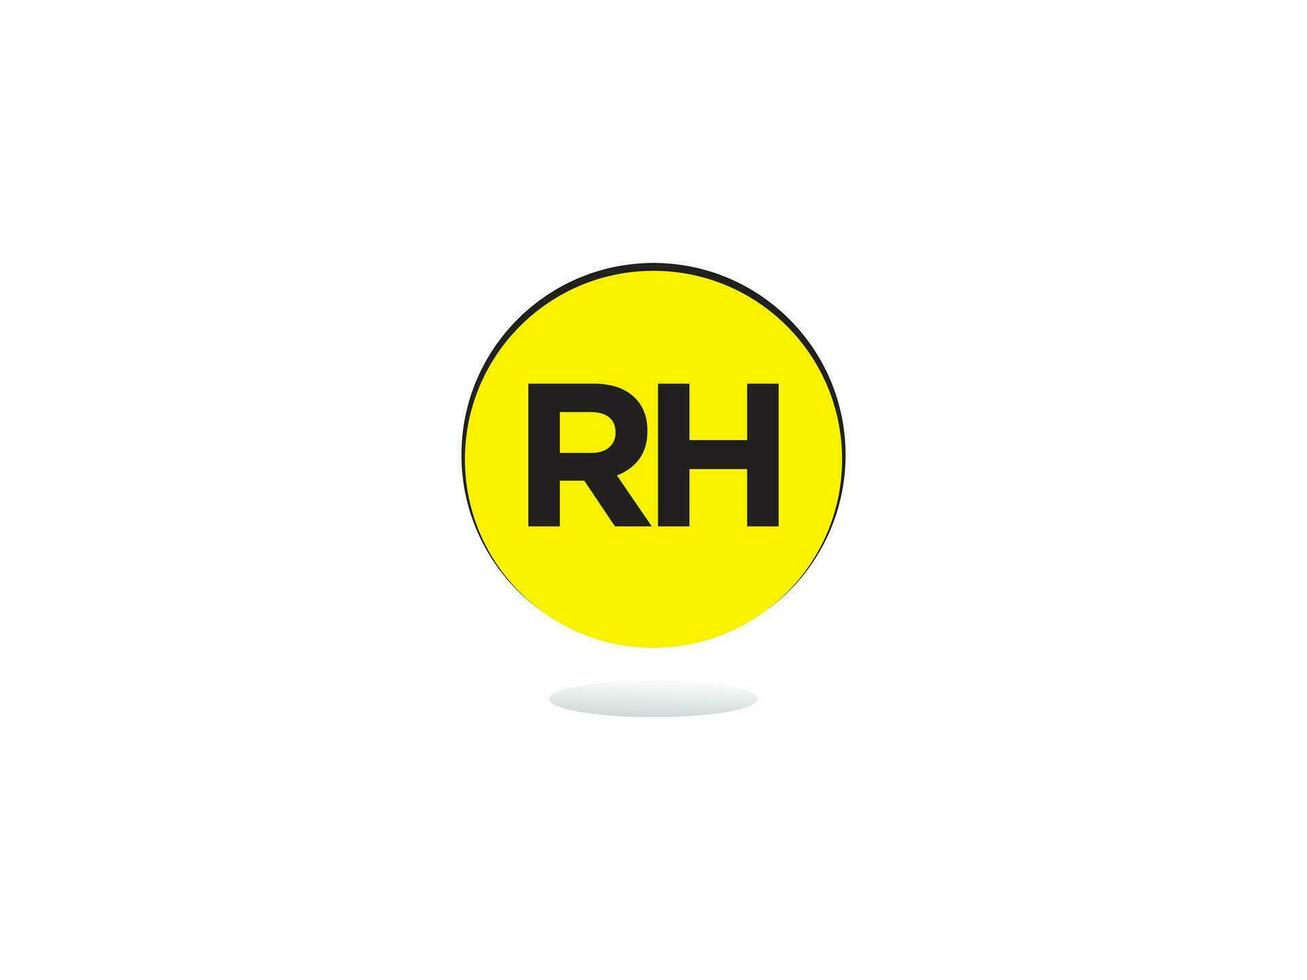 monogram rh vector logo icoon, minimalistische rh logo brief ontwerp